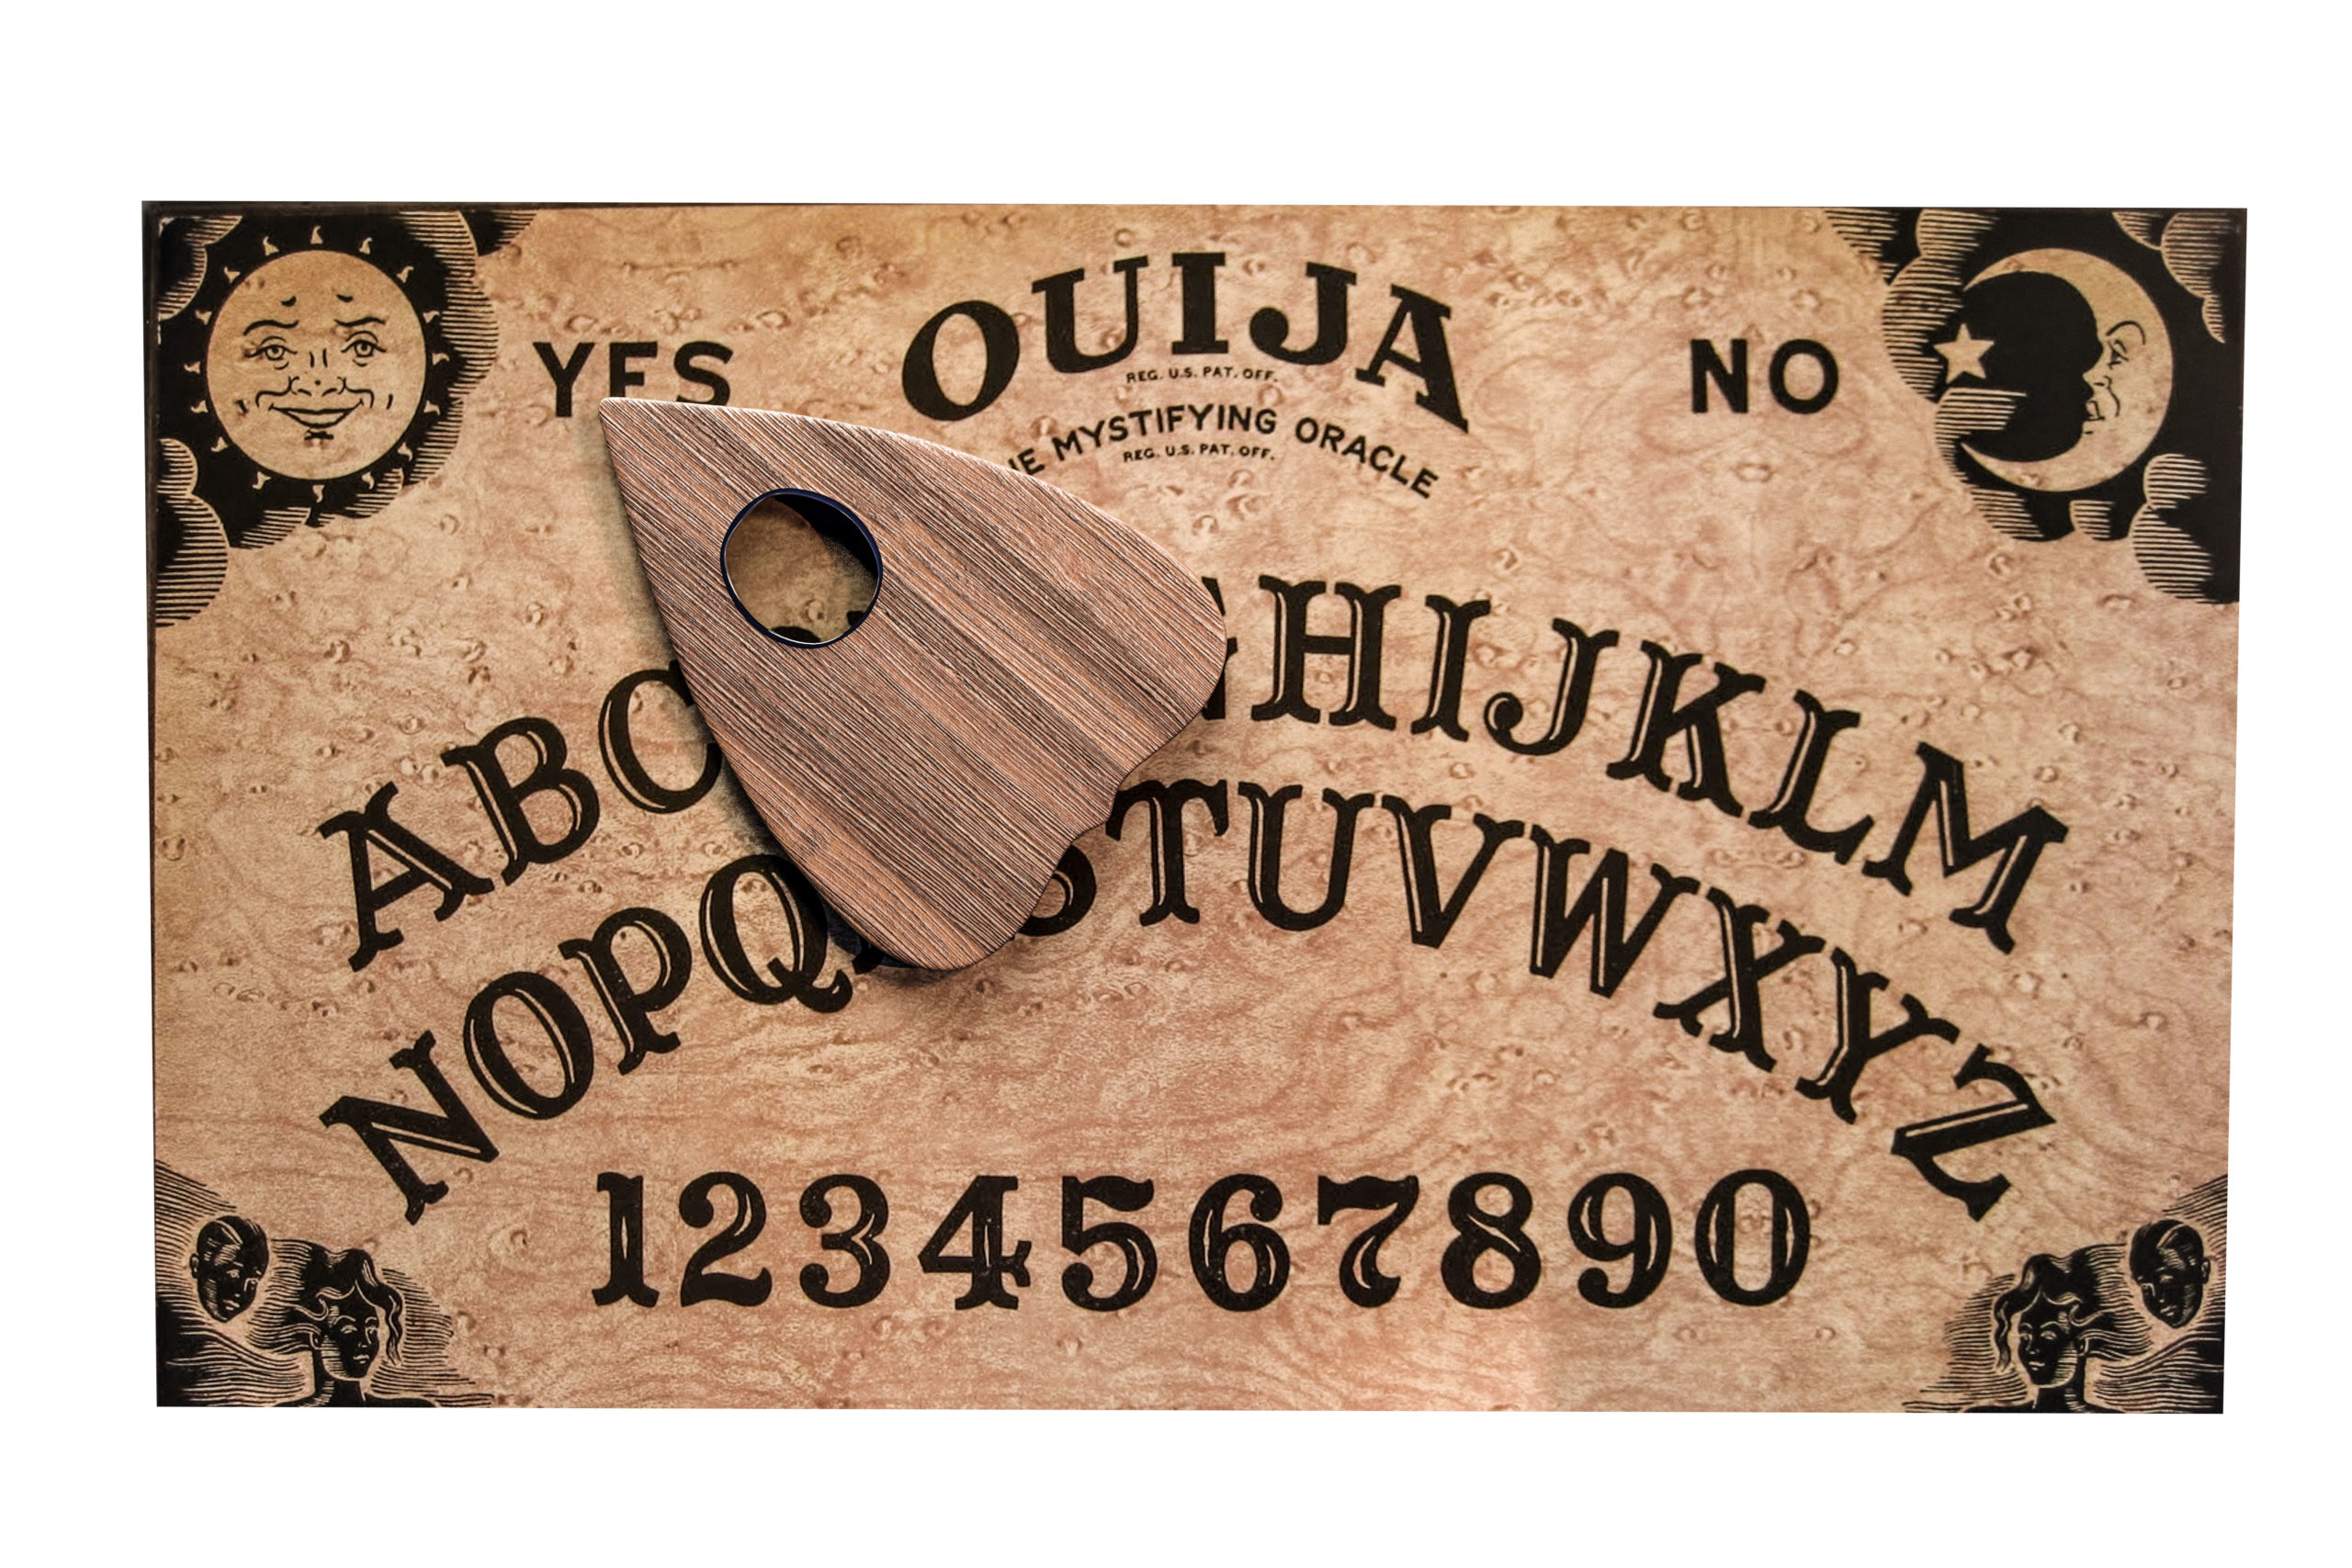 Ouija Board Isaac подборка фото, бесплатные фотки для народа России